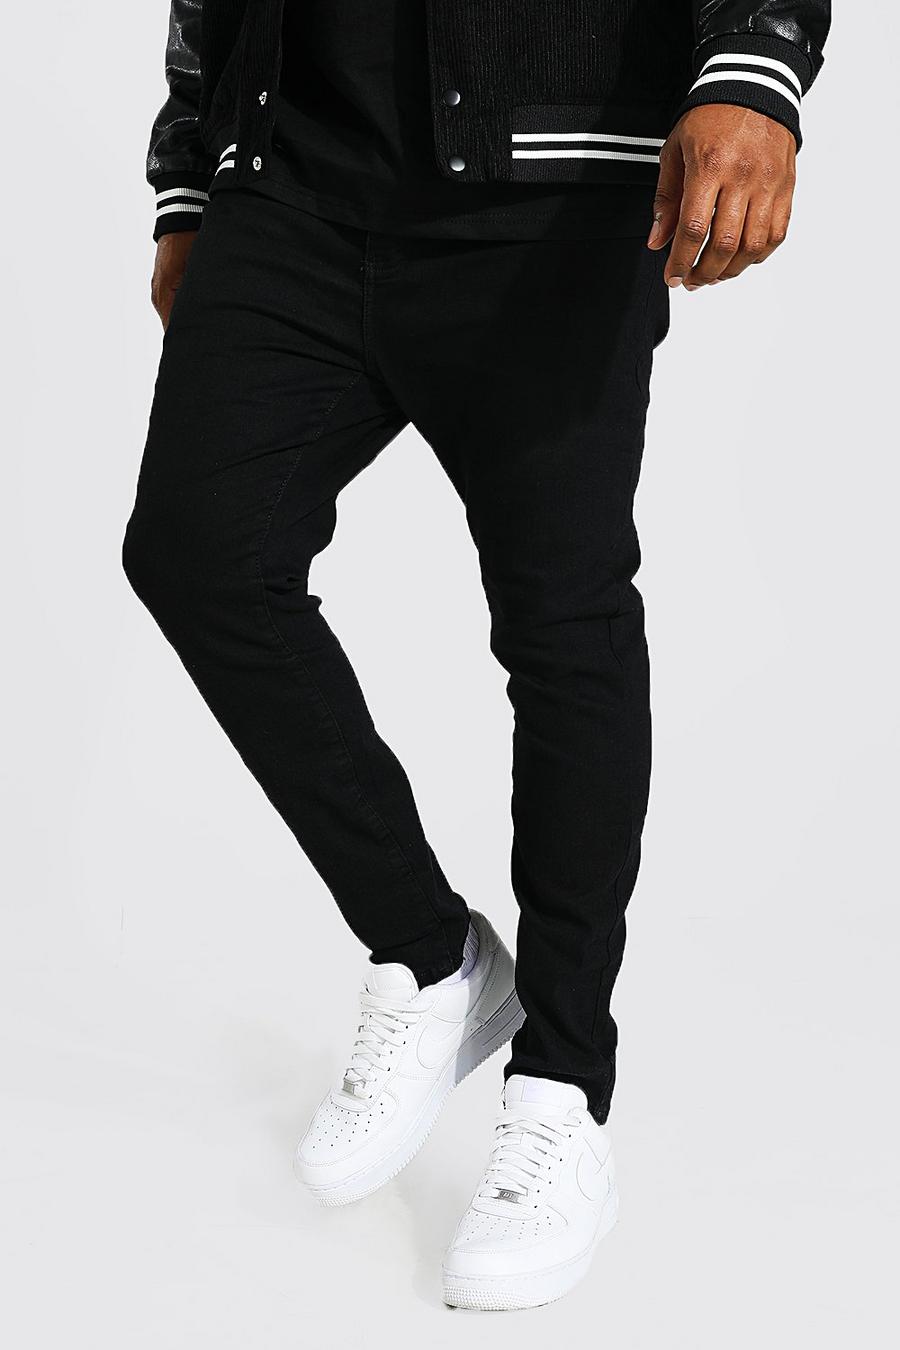 שחור מכנסי ג'ינס סופר סקיני לגברים גדולים וגבוהים image number 1